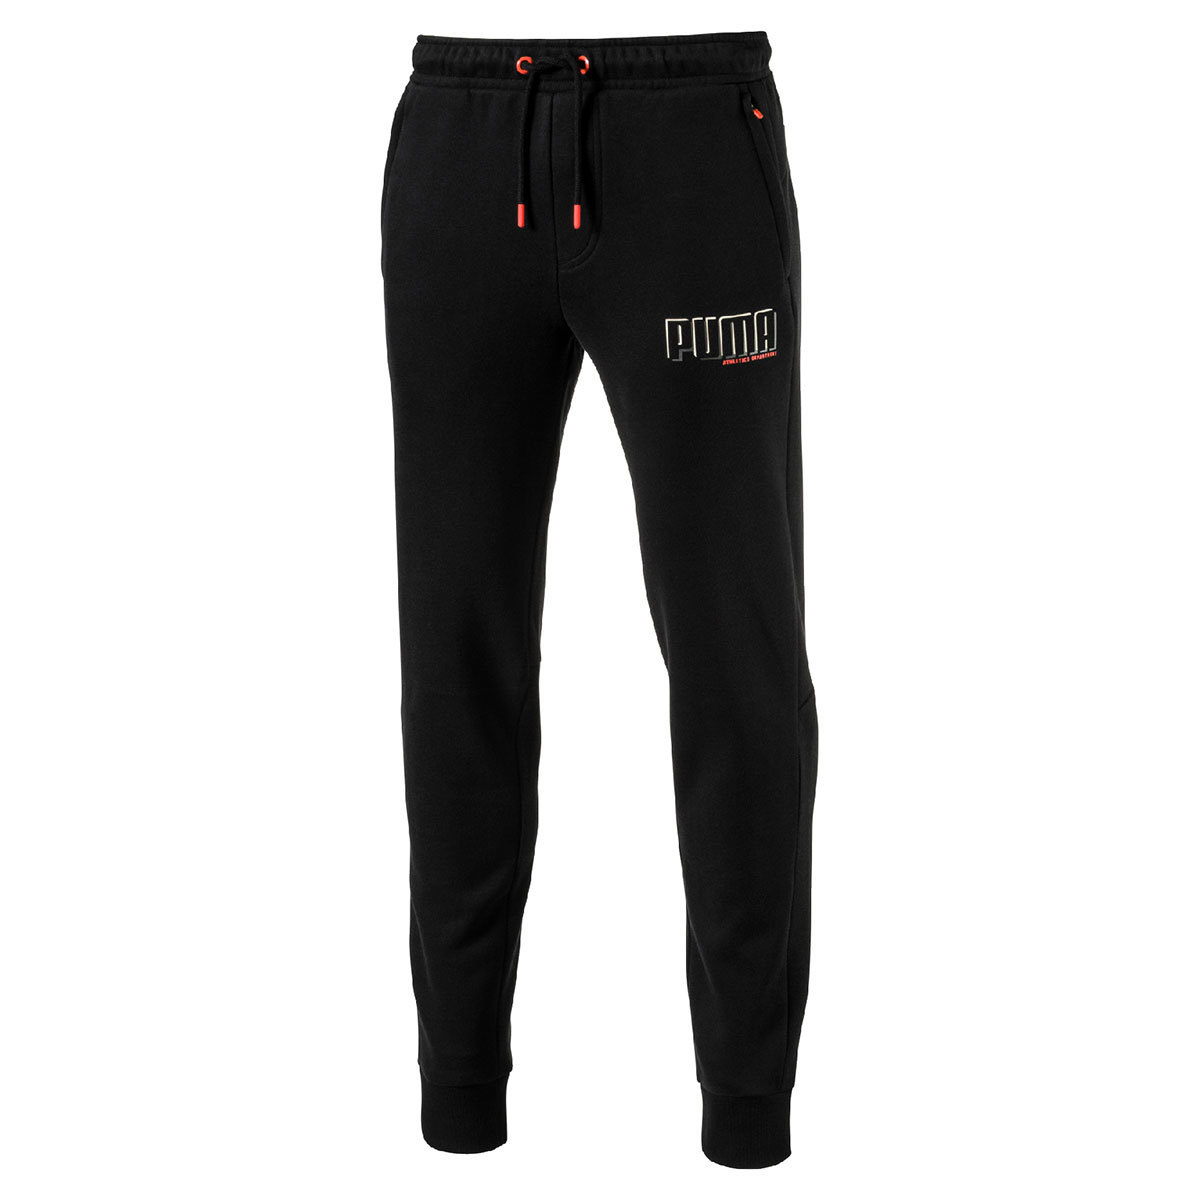 Puma Style Men's Athletic Pants, Black - Extra Extra Large | Costco UK